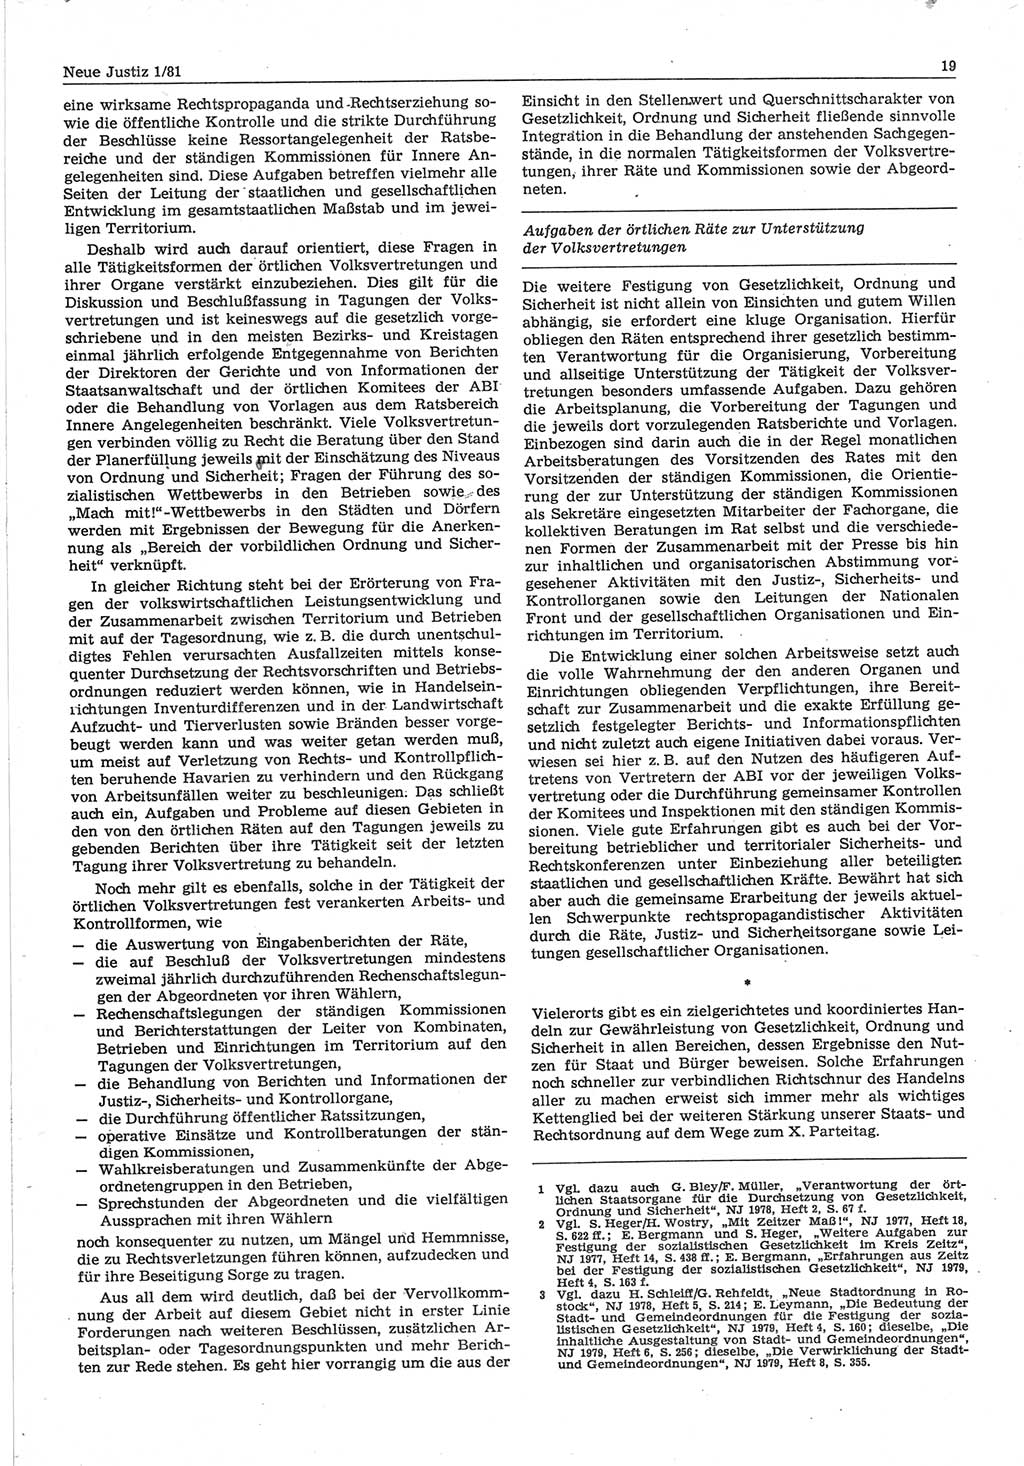 Neue Justiz (NJ), Zeitschrift für sozialistisches Recht und Gesetzlichkeit [Deutsche Demokratische Republik (DDR)], 35. Jahrgang 1981, Seite 19 (NJ DDR 1981, S. 19)